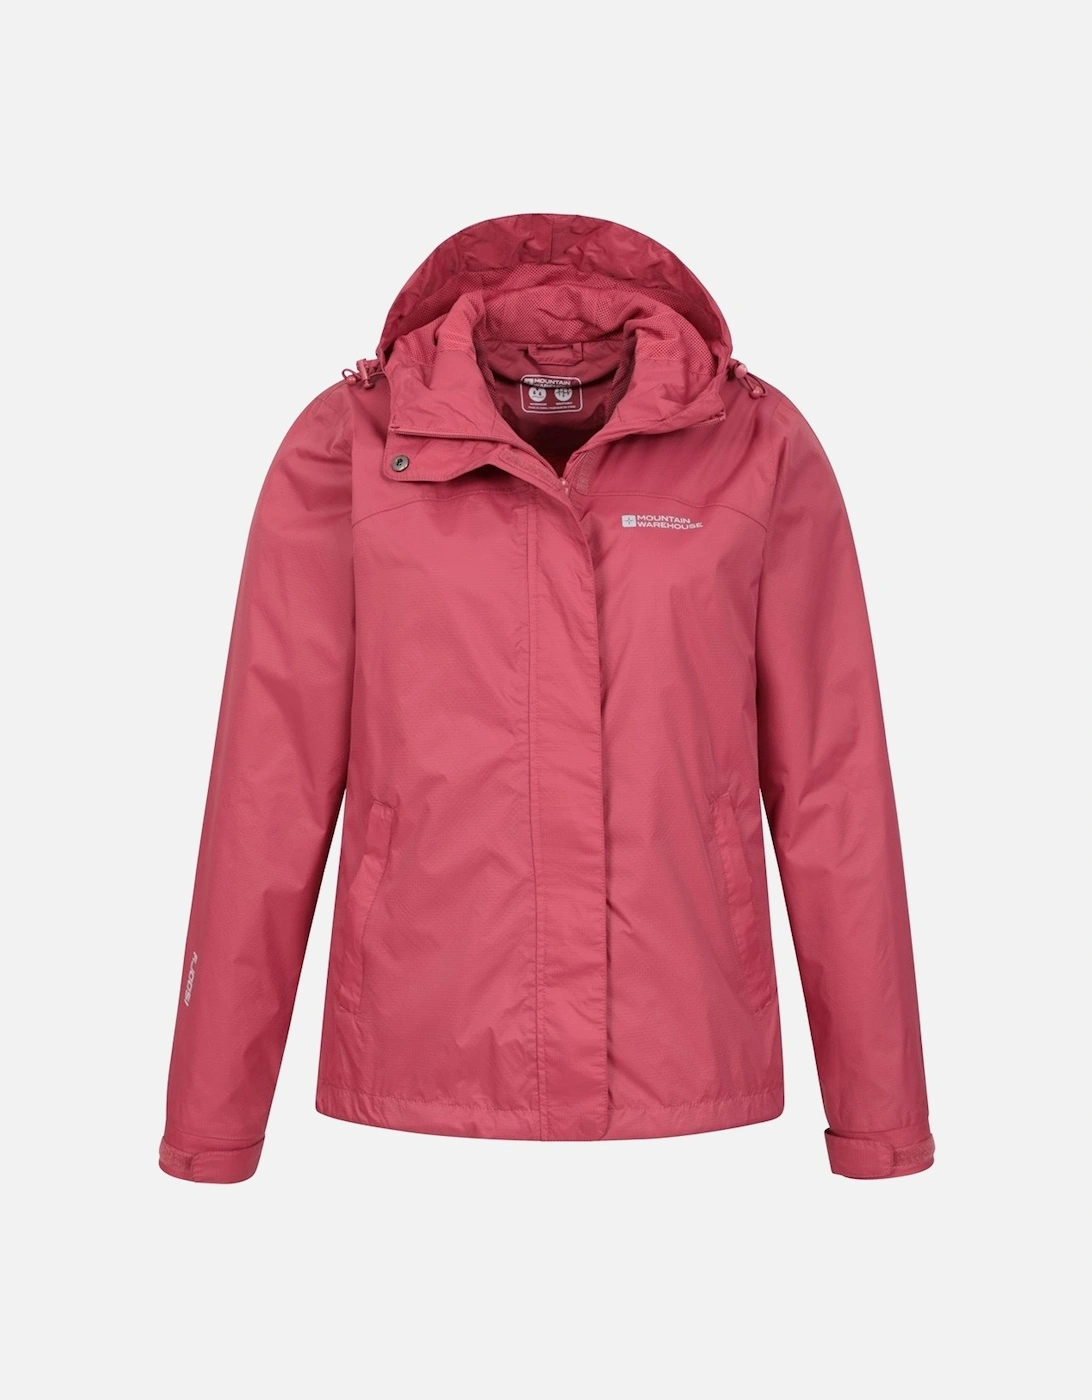 Womens/Ladies Torrent Waterproof Jacket